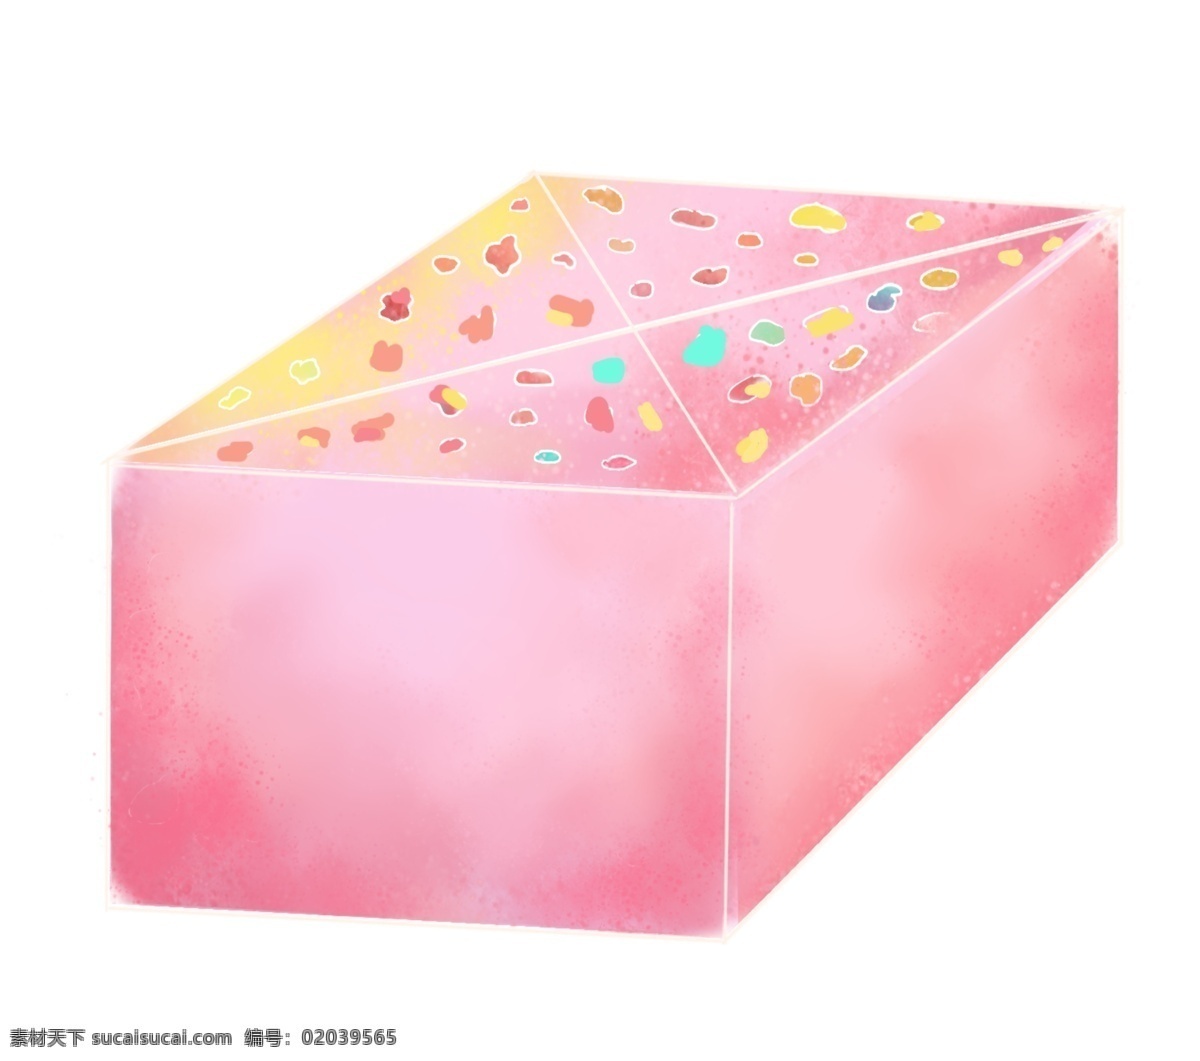 粉色 蛋糕 卡通 插画 粉色的蛋糕 卡通插画 蛋糕插画 食物 美食 甜点 甜品 甜食 漂亮的蛋糕